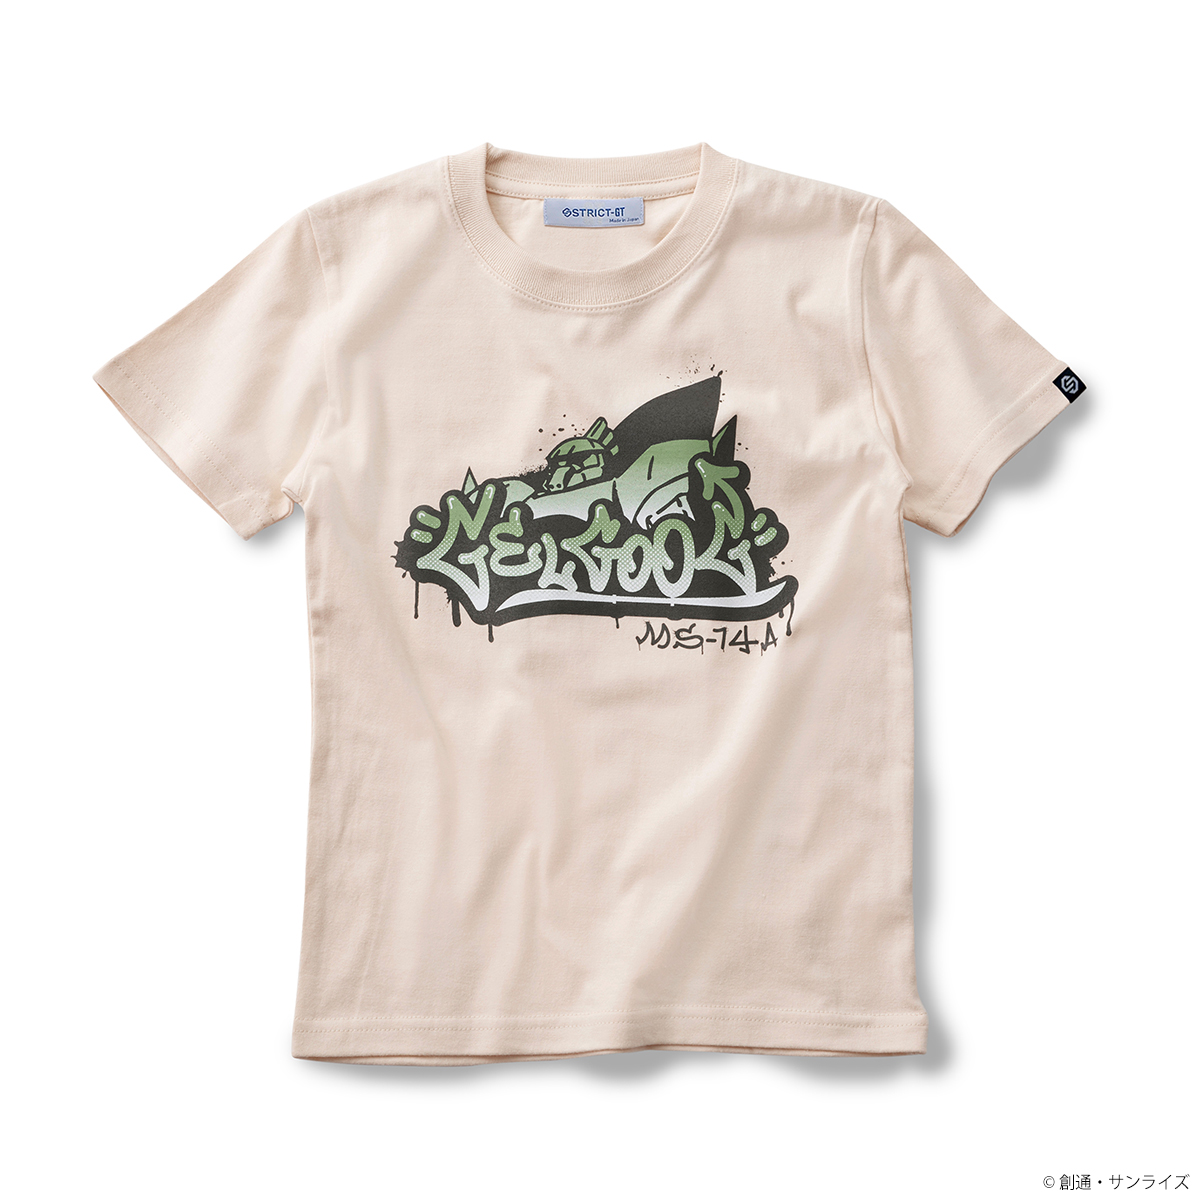 『機動戦士ガンダム』ストリートアート風デザインのキッズTシャツコレクションが登場！